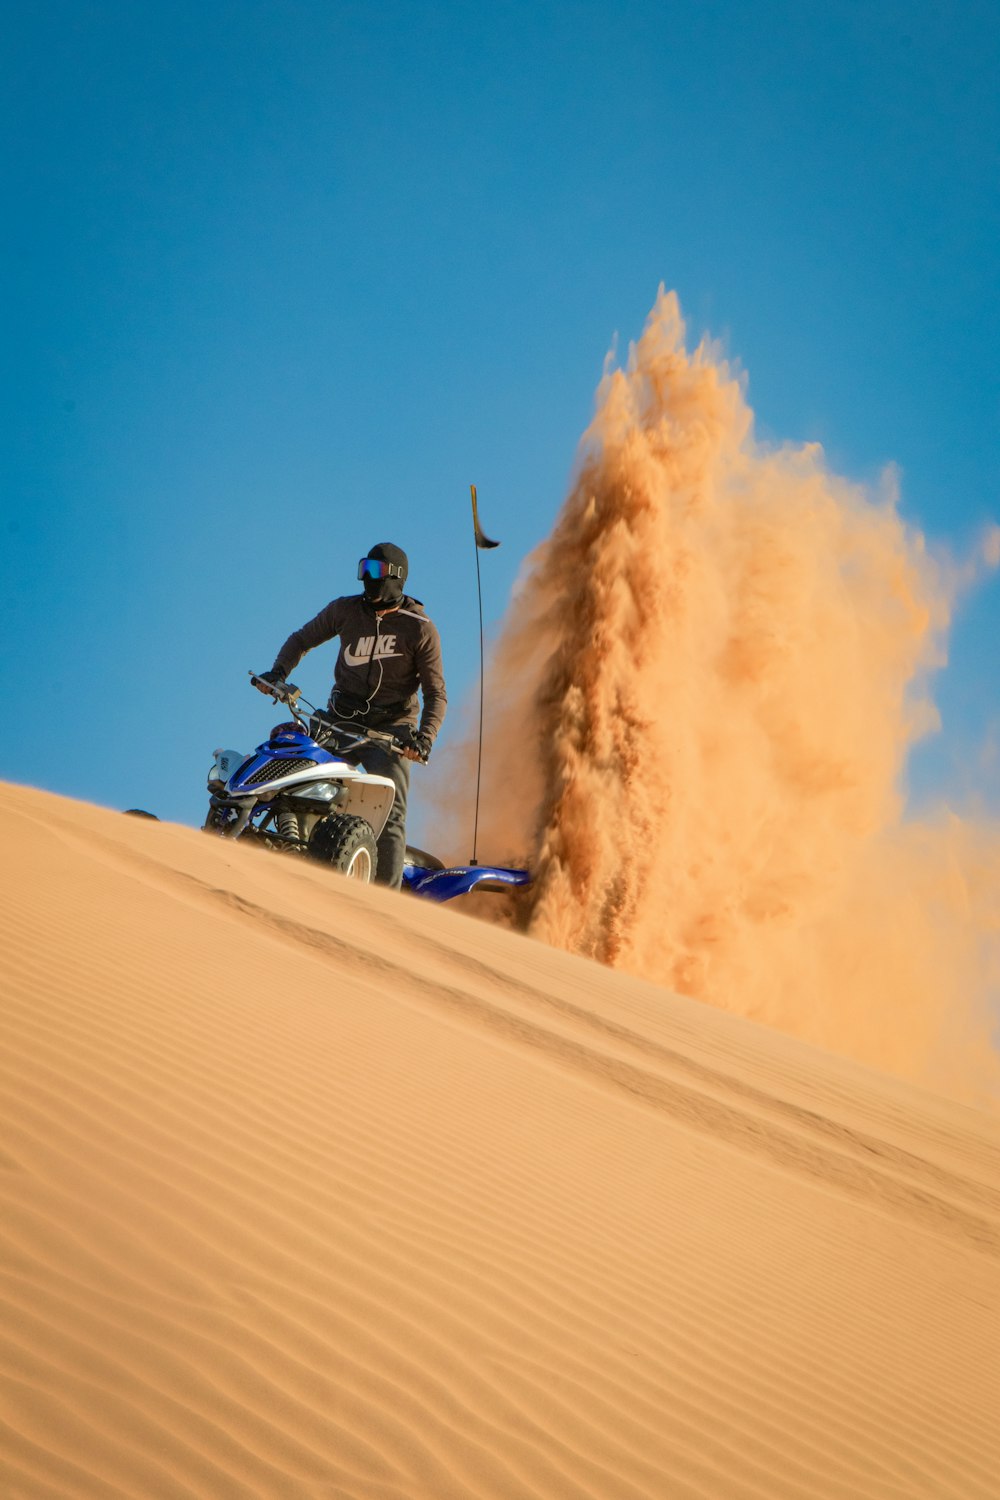 昼間、砂漠で青と白のモトクロスダートバイクに乗っている男